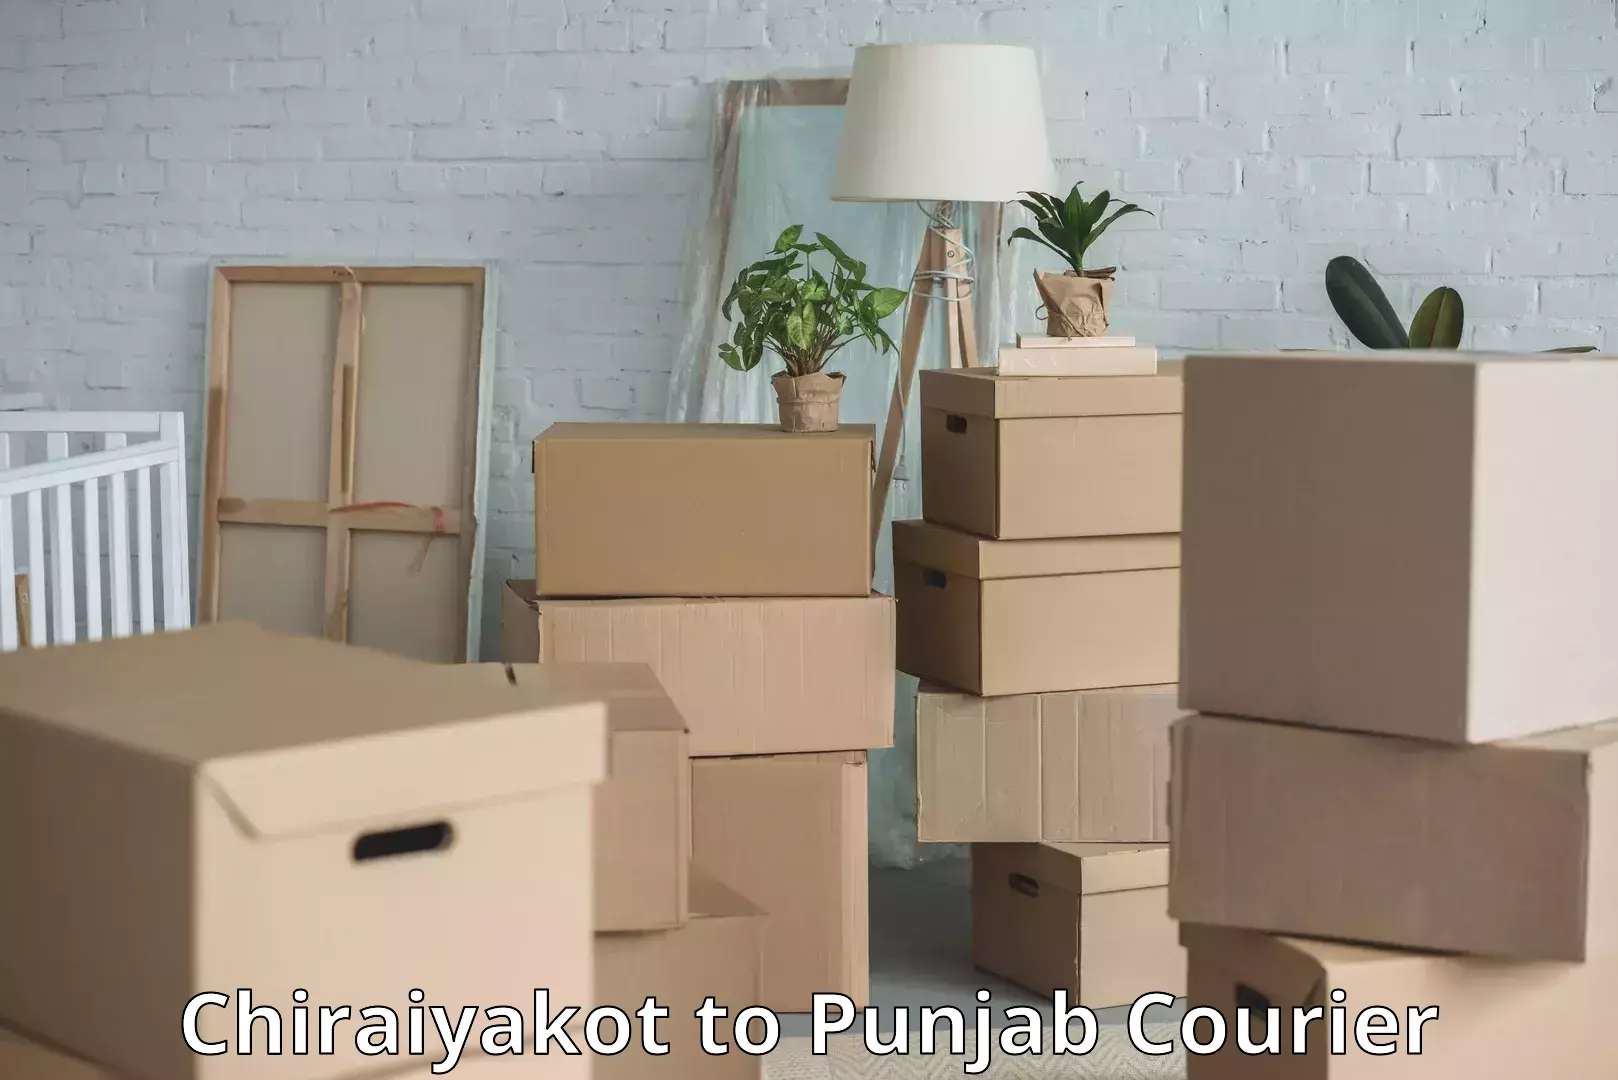 Luggage transport consultancy in Chiraiyakot to Punjab